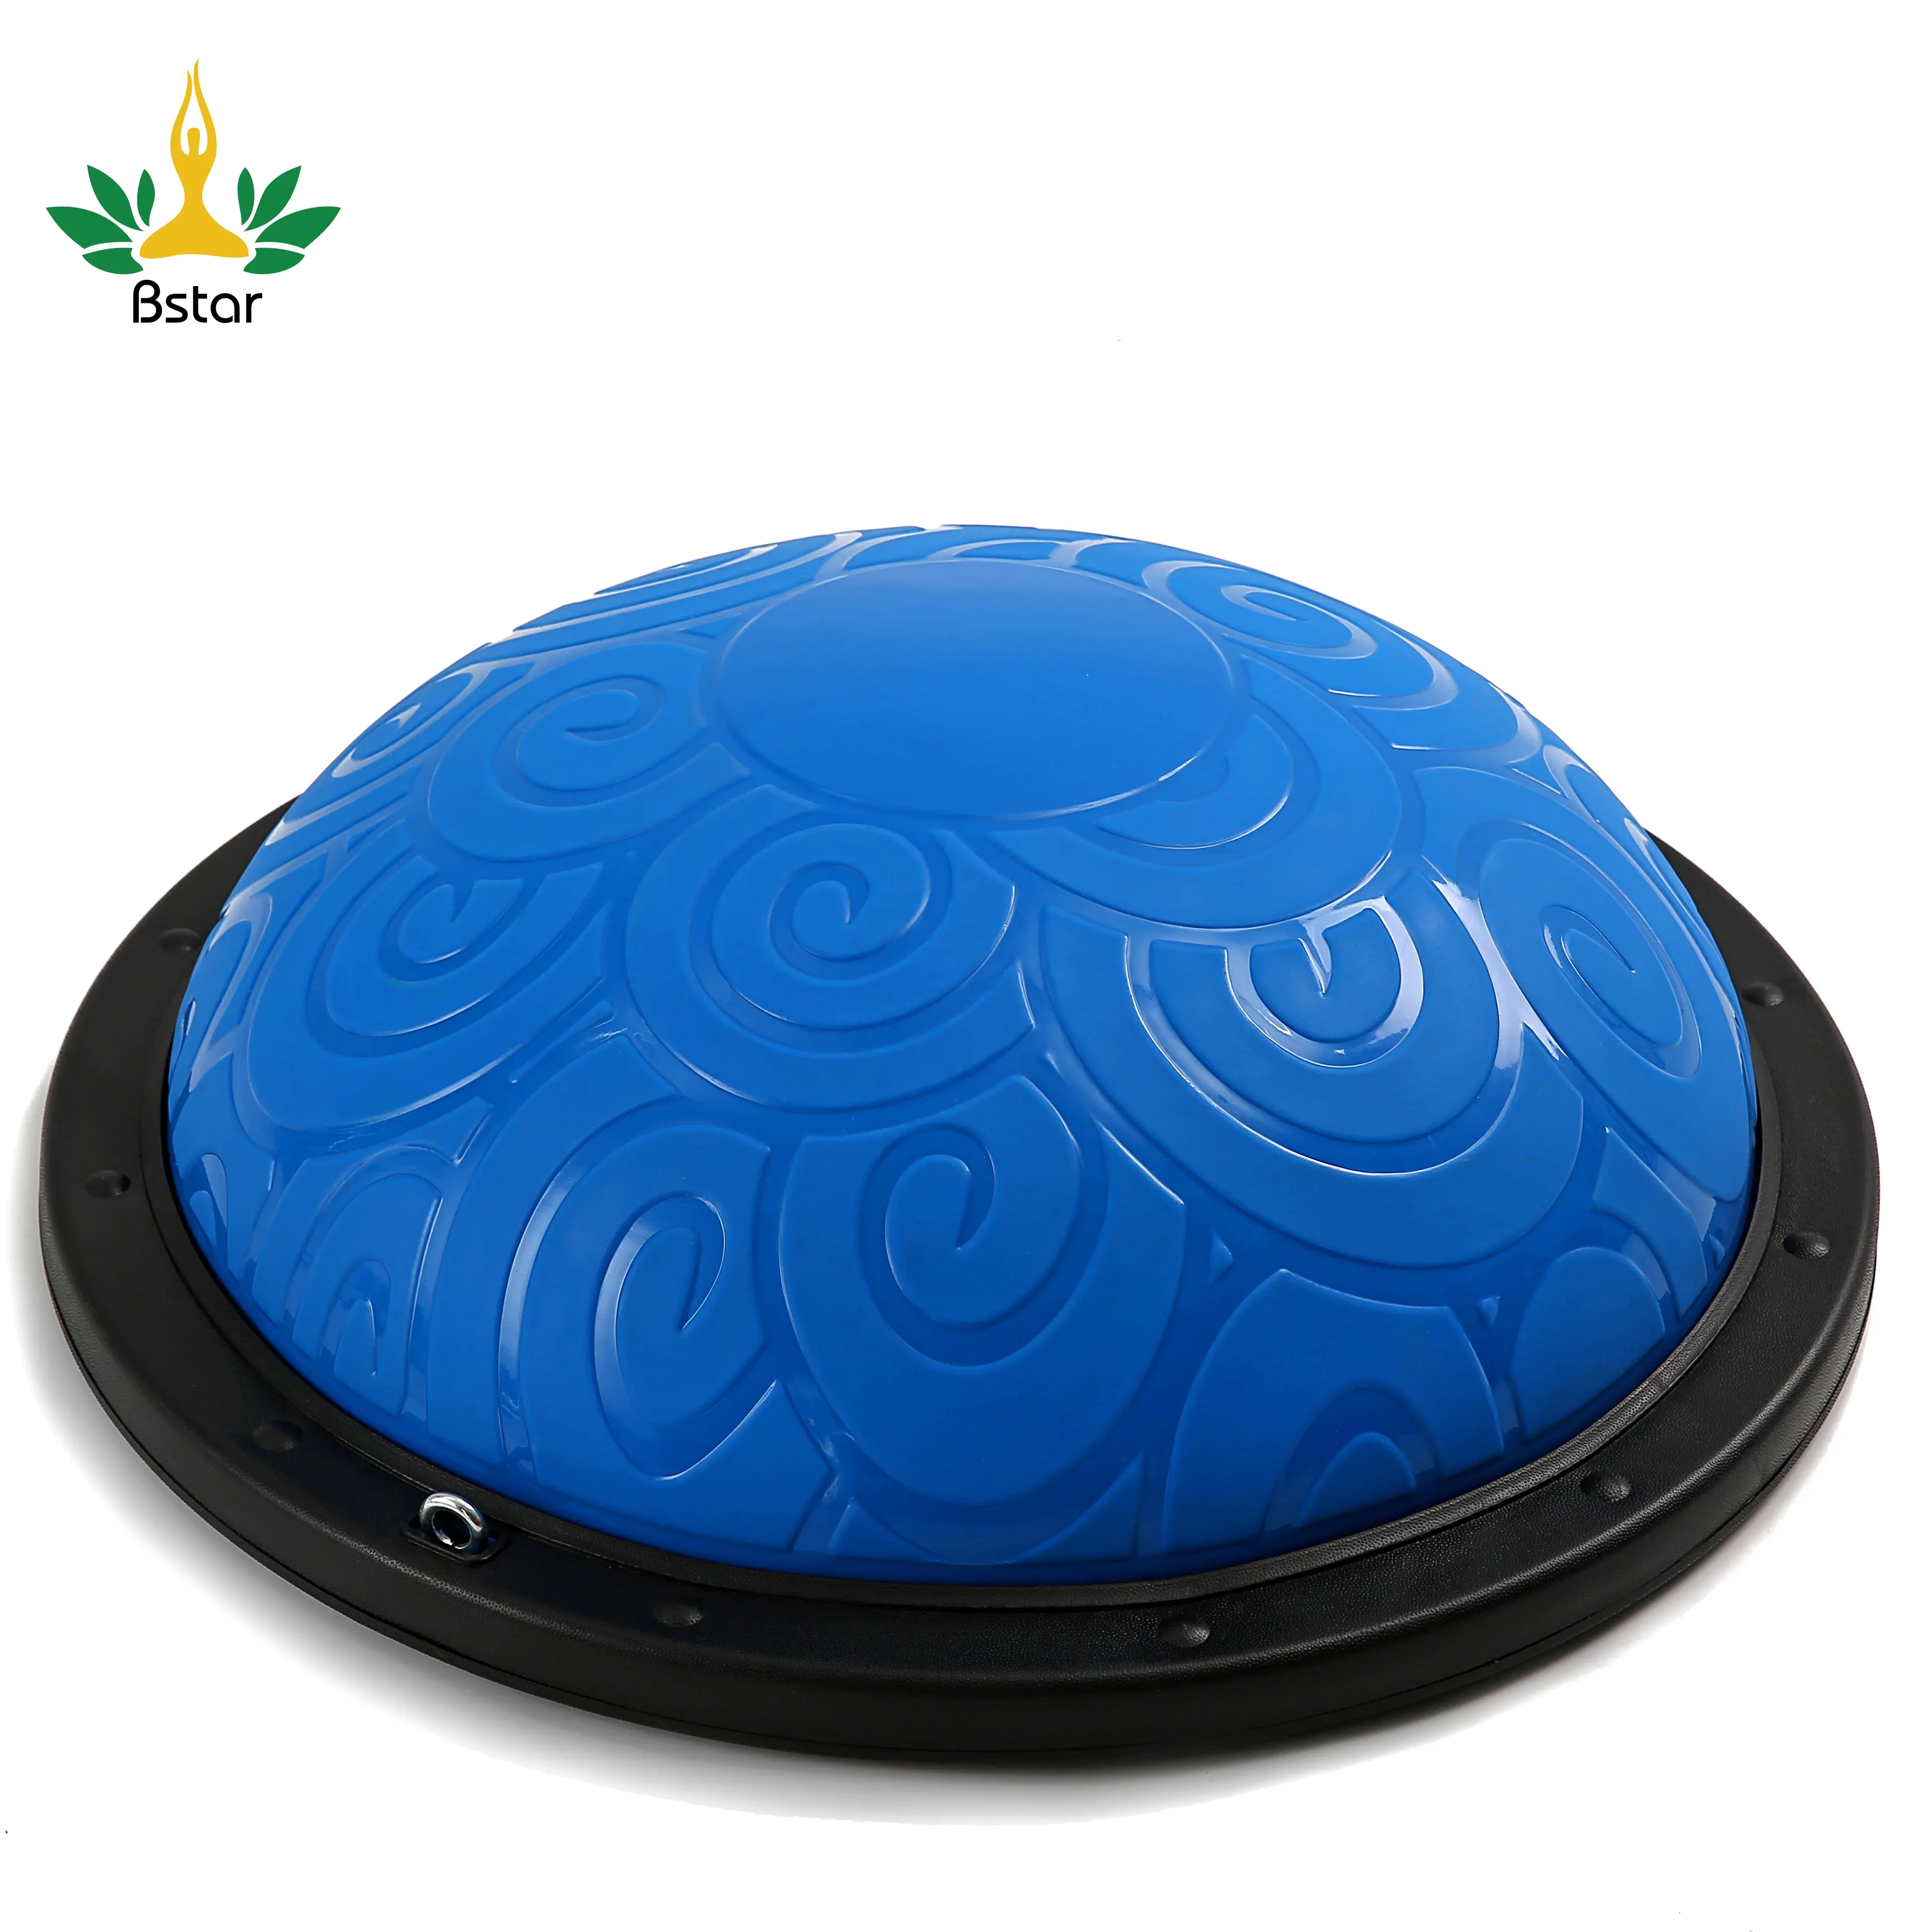 Новый дизайн синий половина Пилатес Бо иск балансировочный мяч для йоги (pvu) с тренажерный зал полосы ПВХ фитнес упражнений диаметр 60 см 5 килограммовая сумка 1 шт.